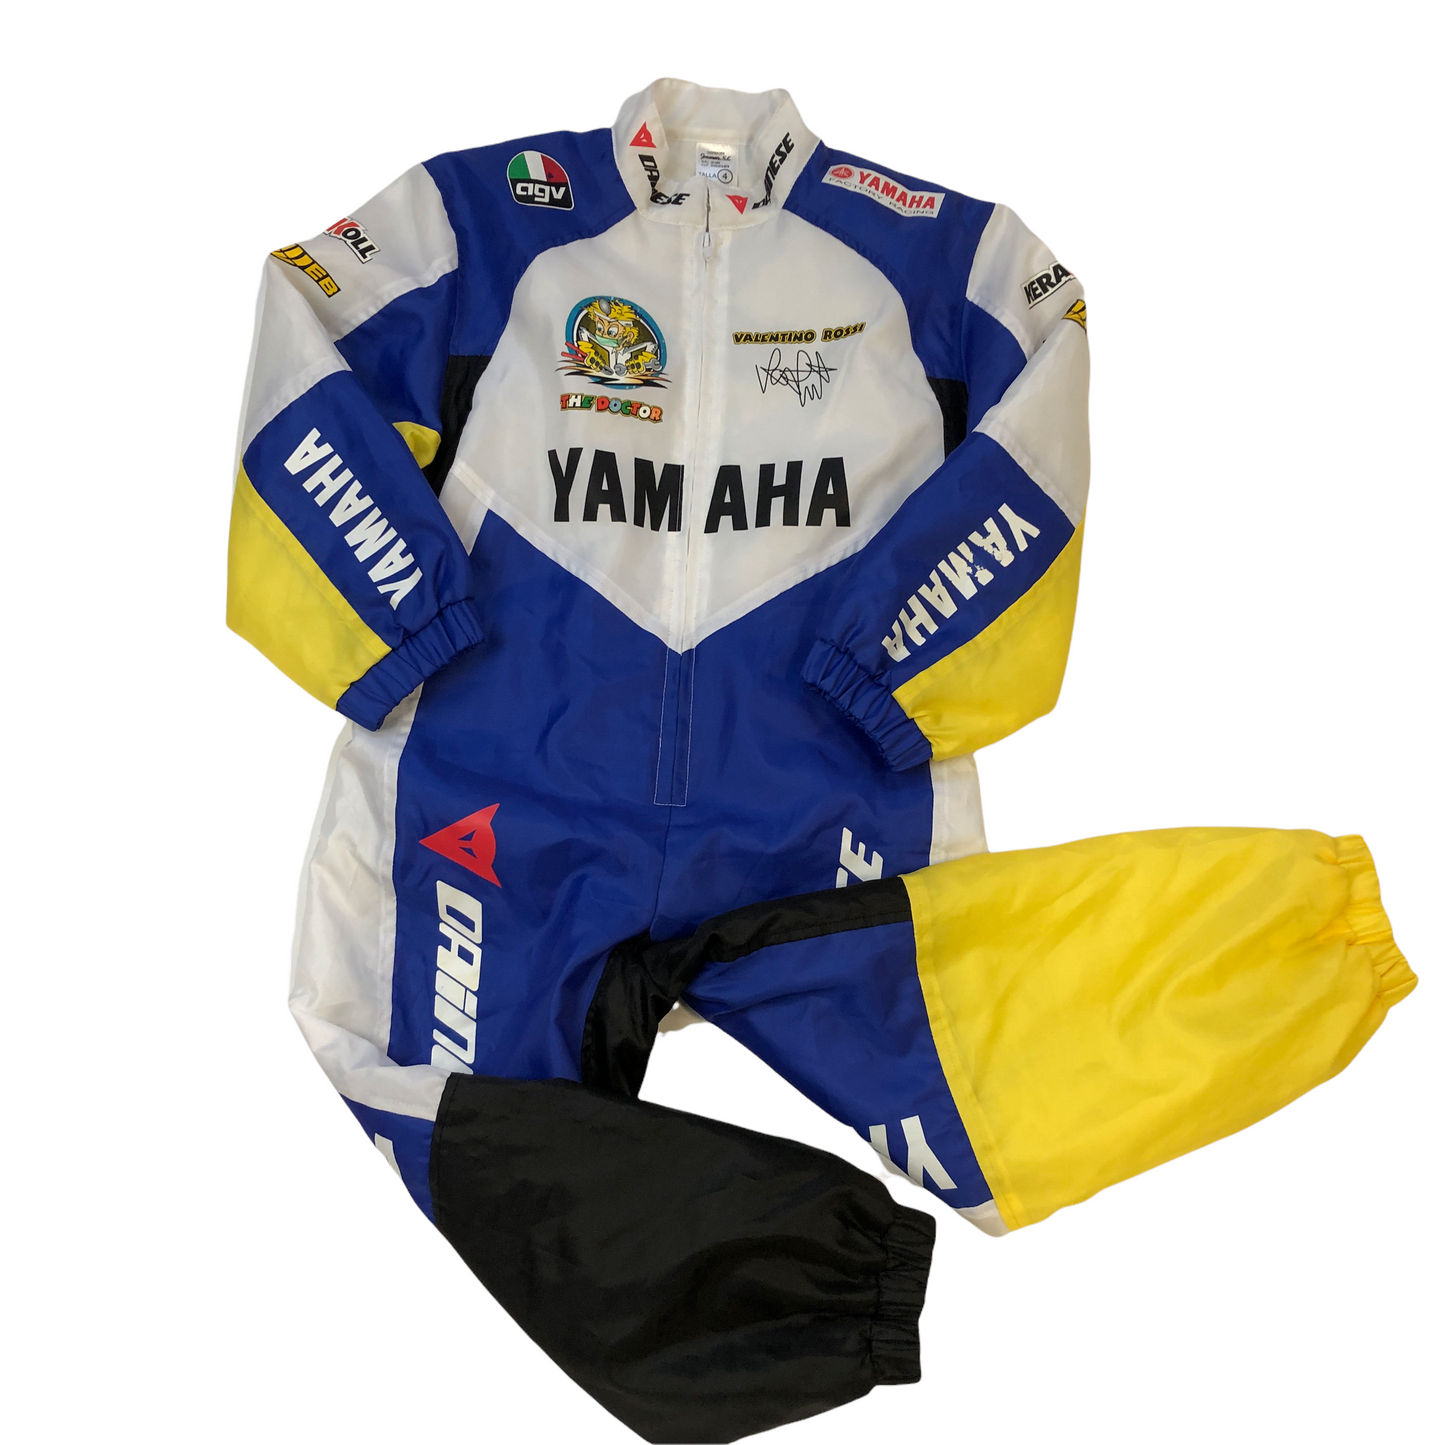 Vintage Racing Suit (5-6yrs)